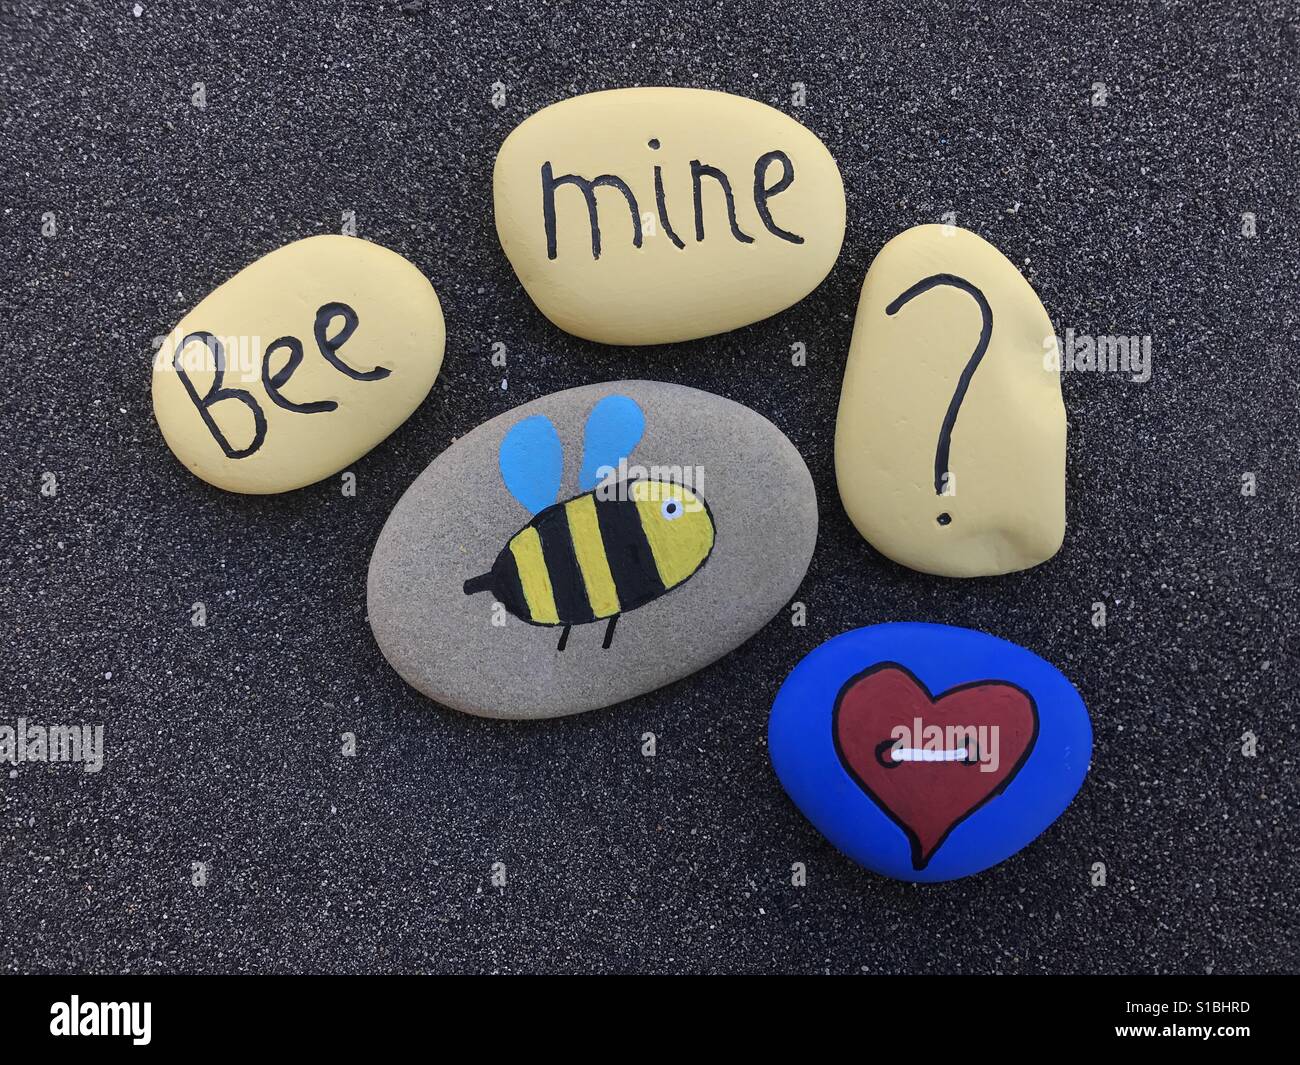 Bee mine ? Stock Photo